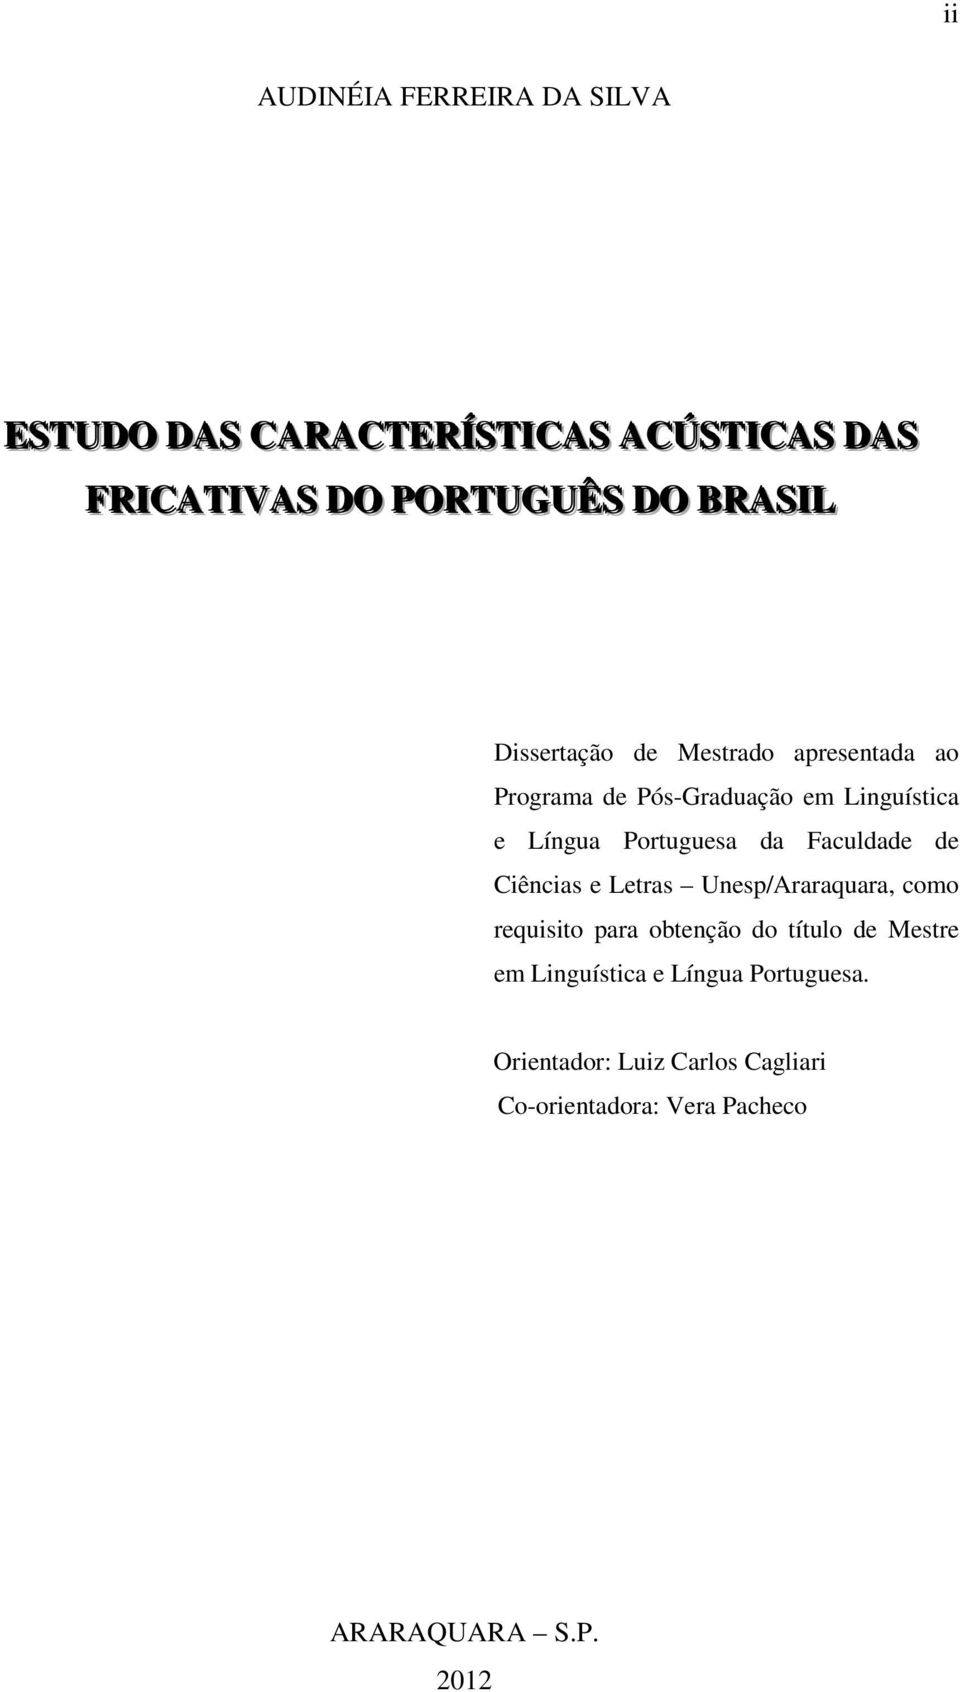 Faculdade de Ciências e Letras Unesp/Araraquara, como requisito para obtenção do título de Mestre em